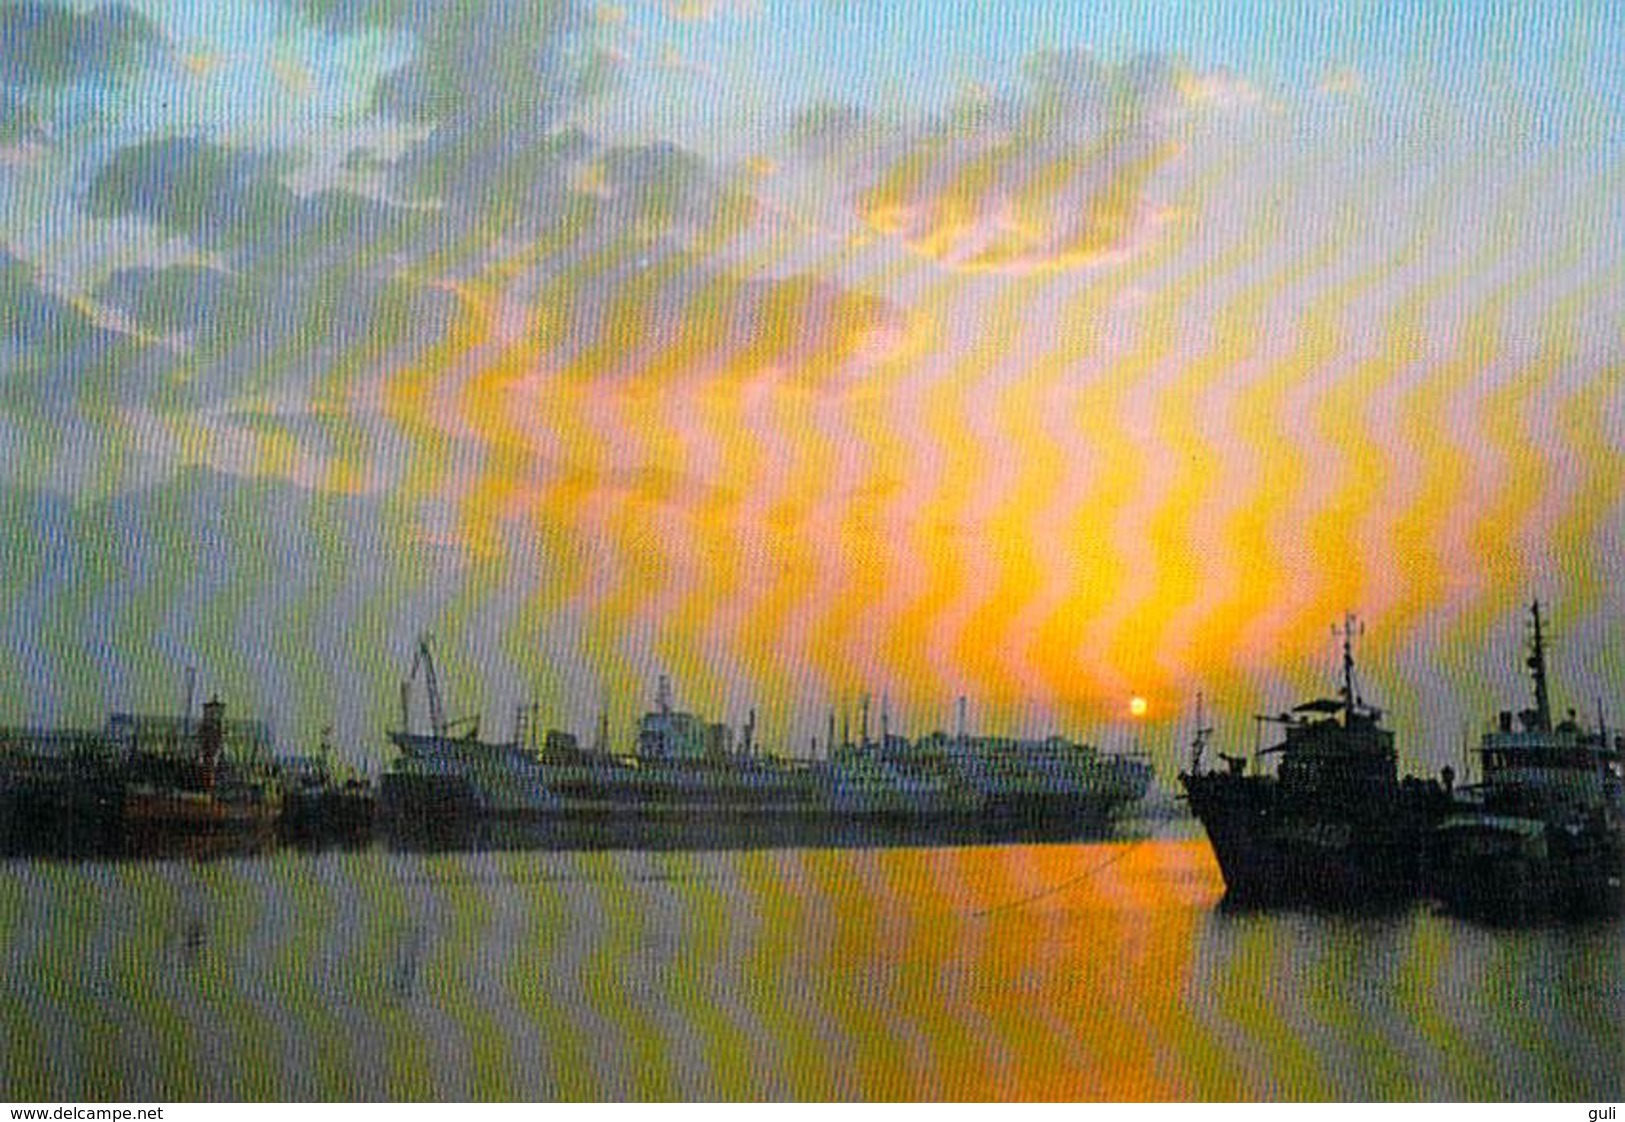 Asie-CHINA-CHINE The Pohai Sea At Sunrise (Bohai Sea)  (bateau Bateaux Ship Ship S)  *PRIX FIXE - Chine